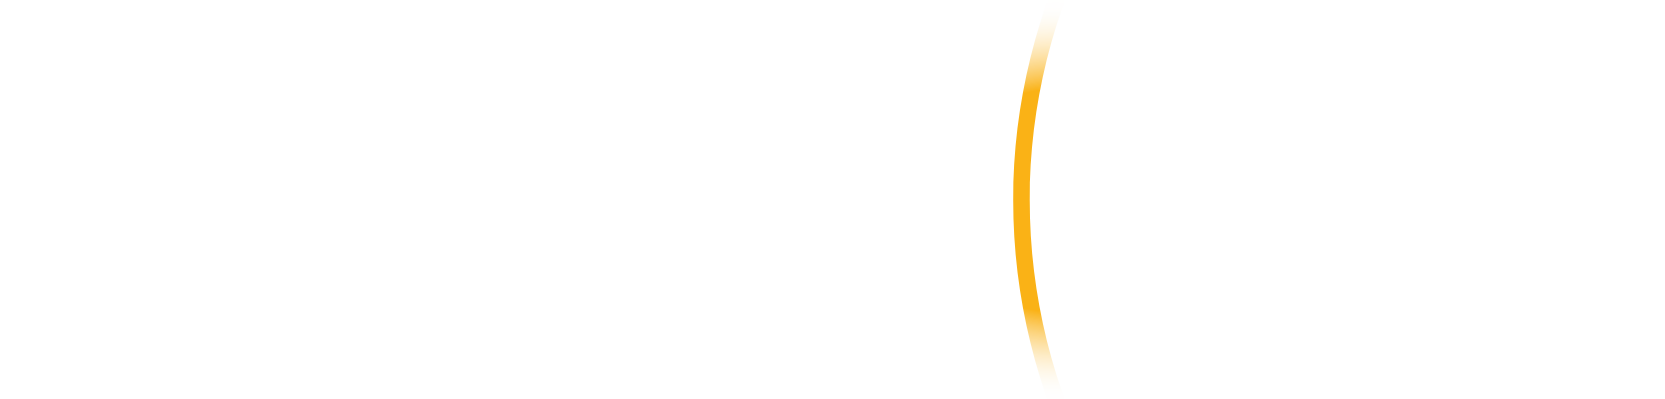 BlackSky Technology logo grand pour les fonds sombres (PNG transparent)